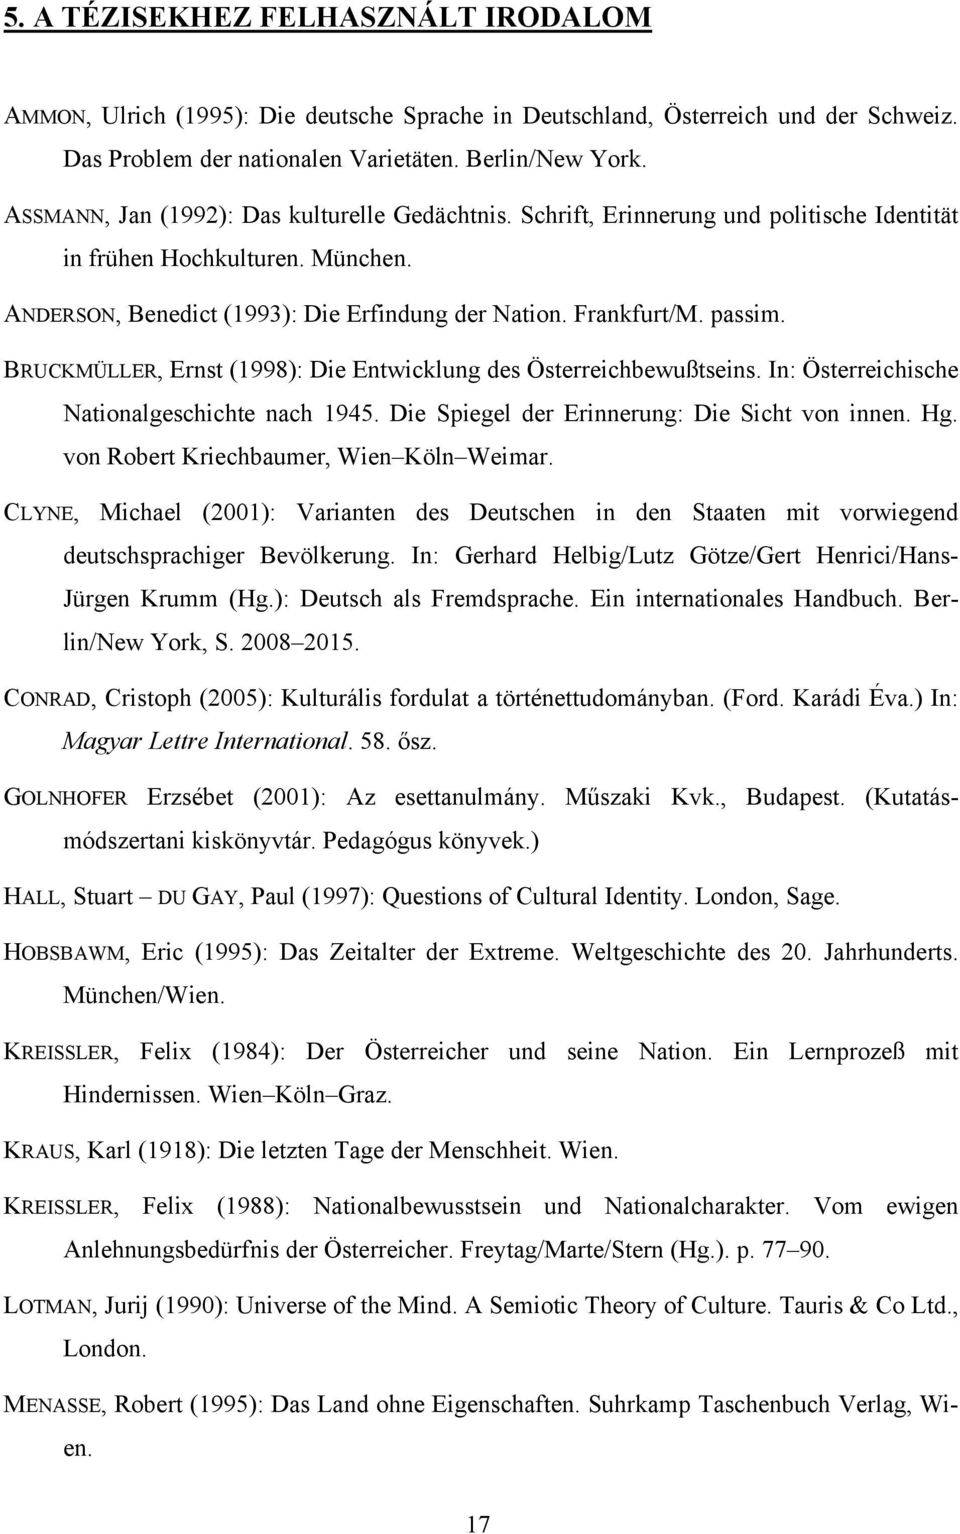 BRUCKMÜLLER, Ernst (1998): Die Entwicklung des Österreichbewußtseins. In: Österreichische Nationalgeschichte nach 1945. Die Spiegel der Erinnerung: Die Sicht von innen. Hg.